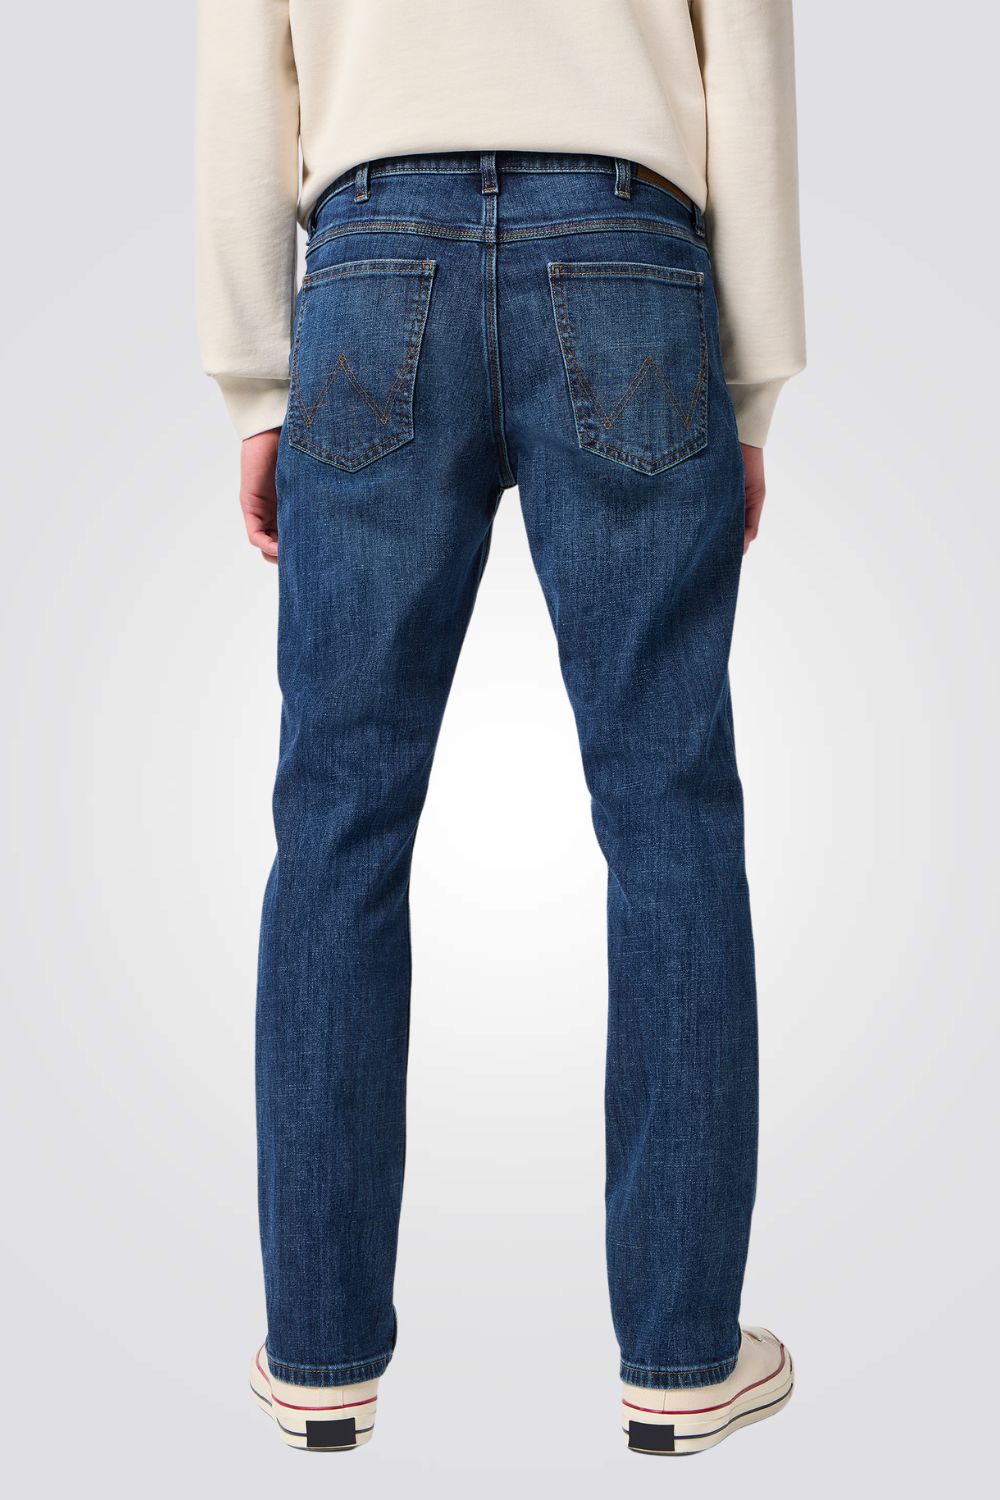 ג'ינס REGULAR בצבע  כחול כהה